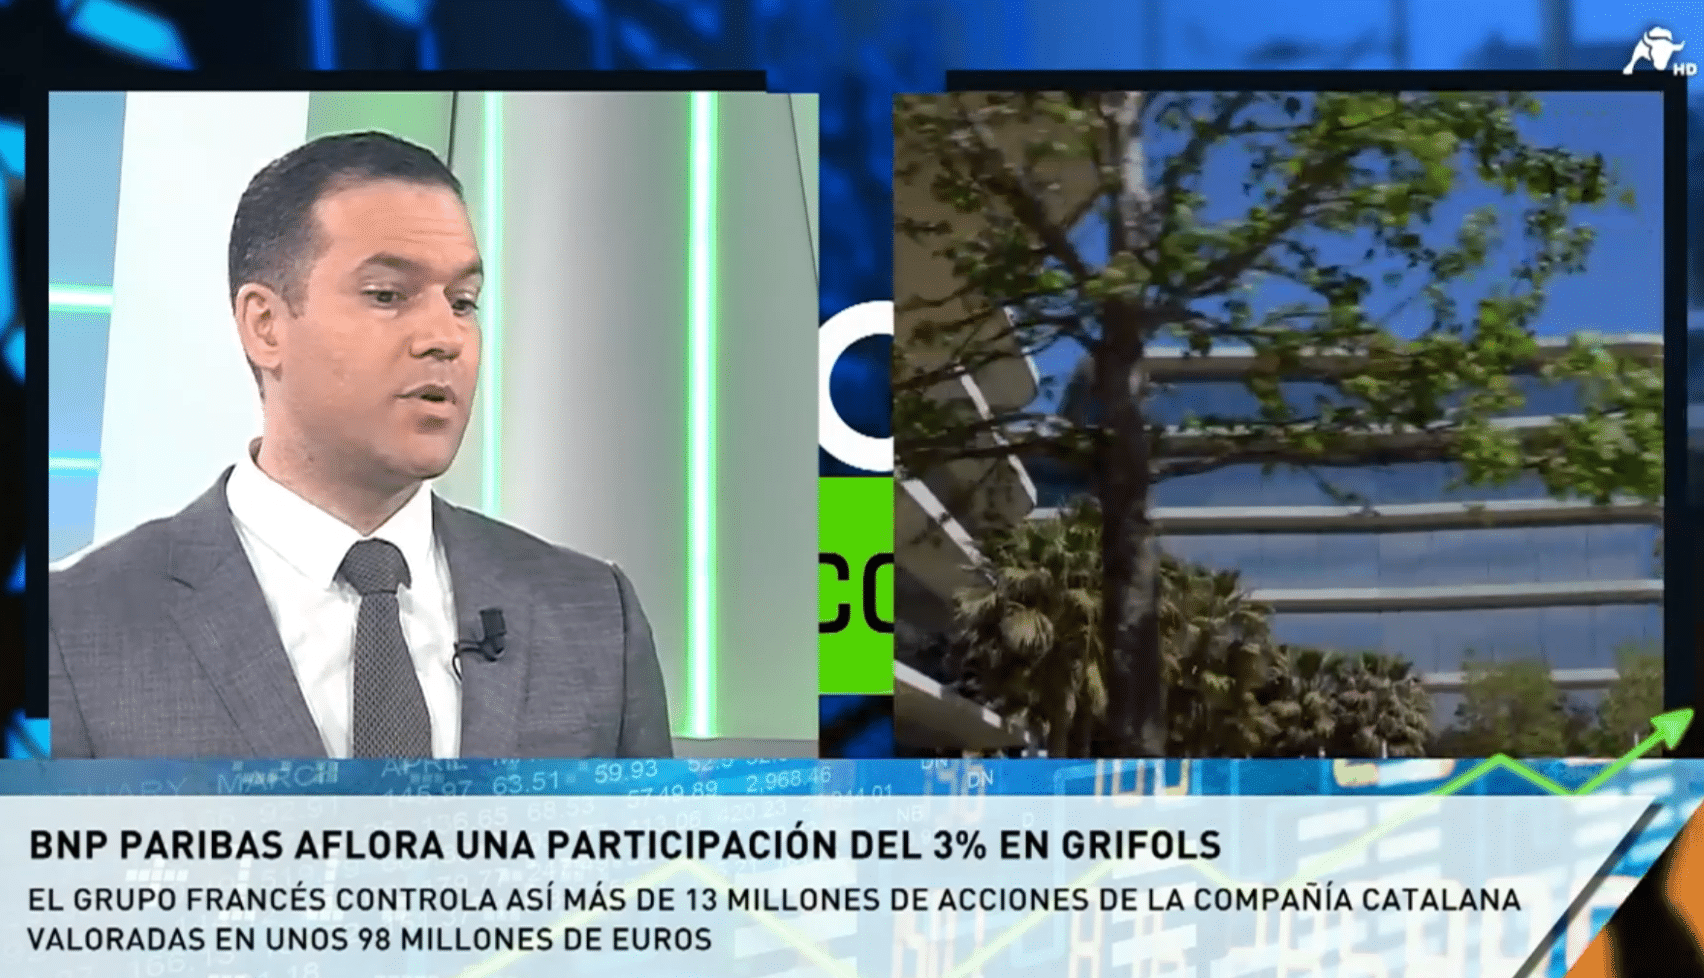  Joaquín Robles: “Grifols va a sufrir un gran riesgo reputacional”